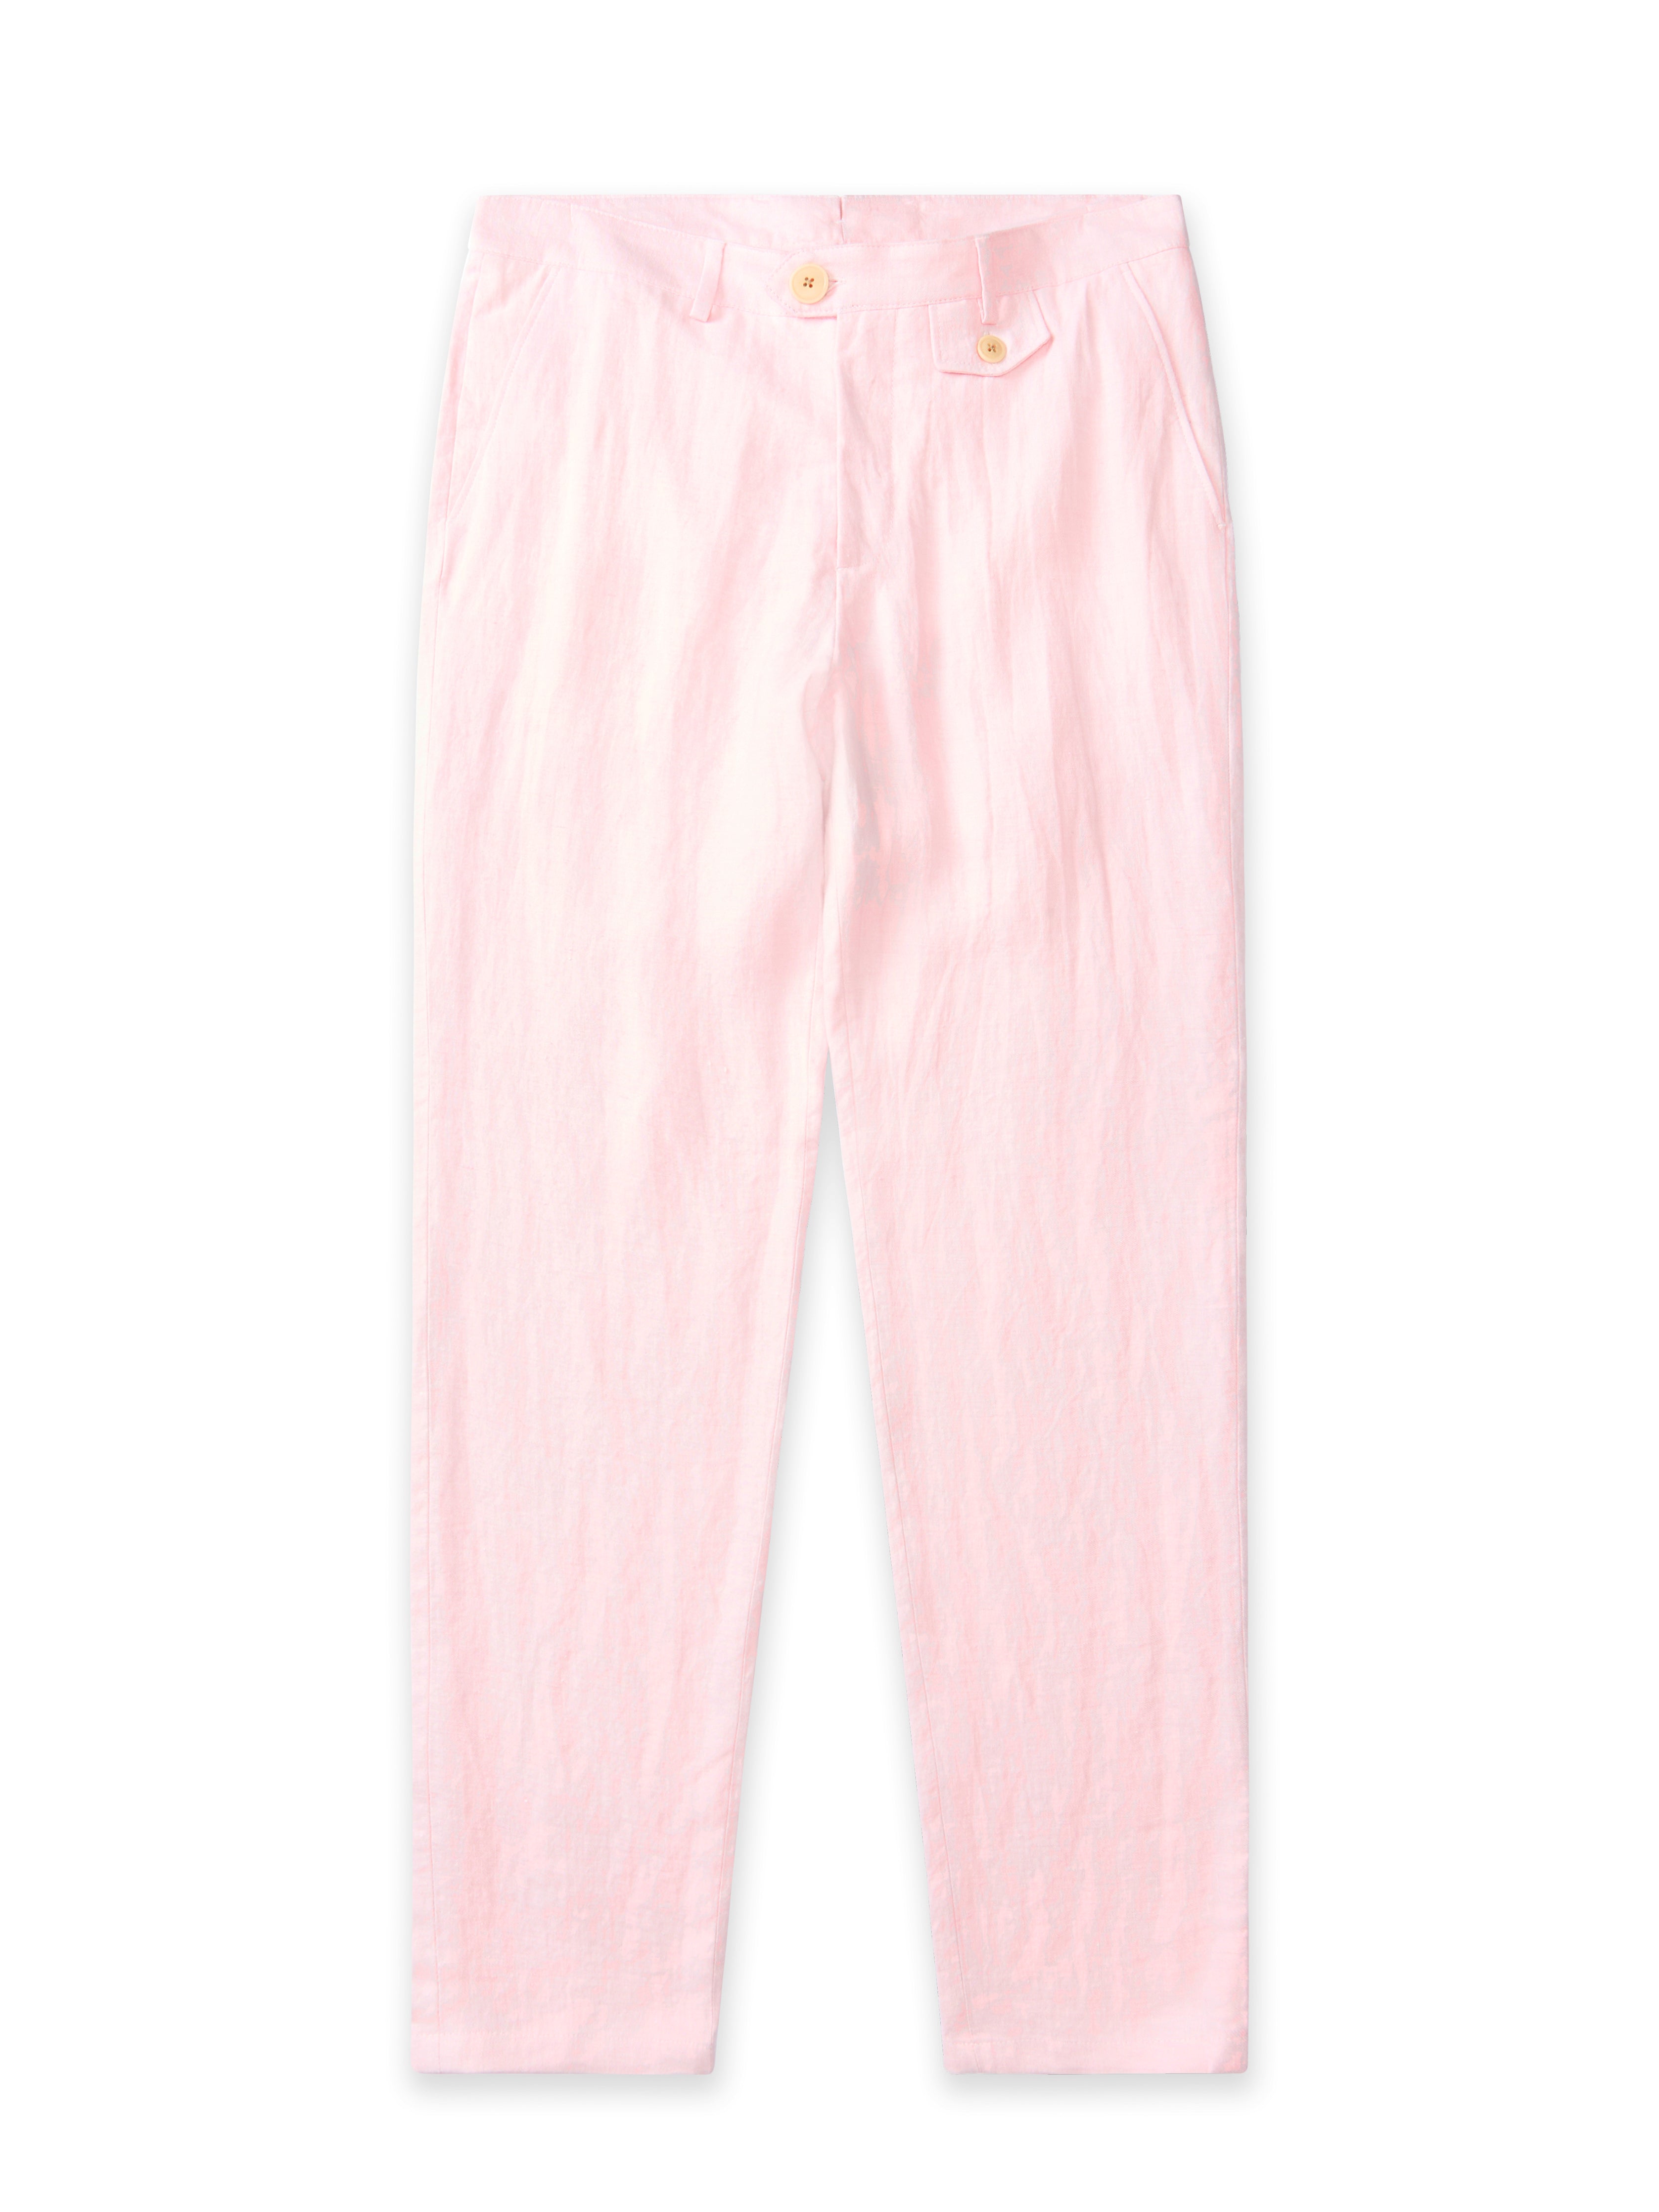 Fishtail Trousers Drescher Pink